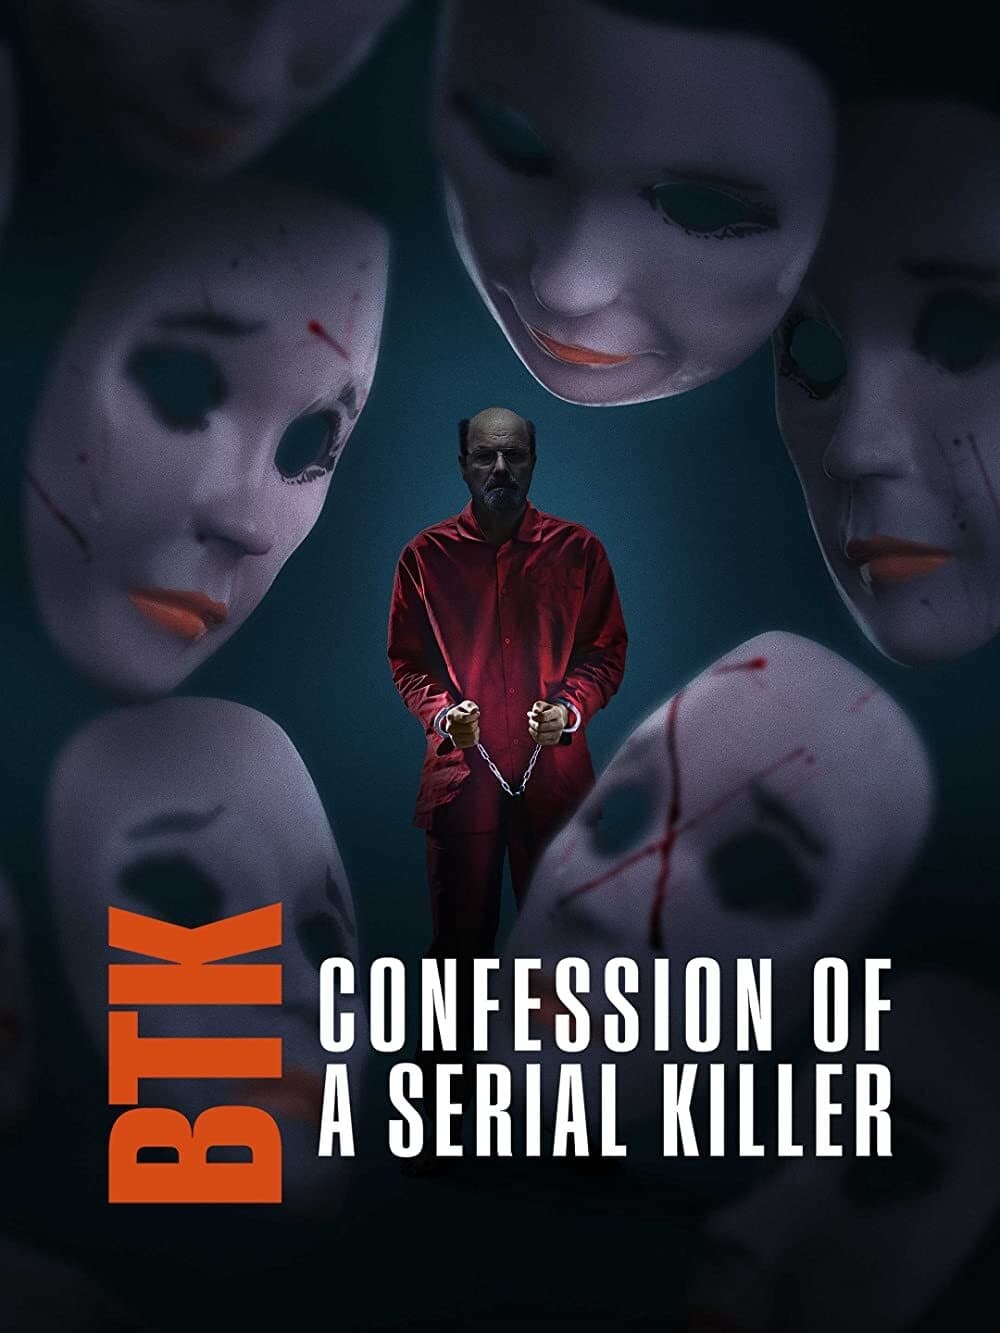 Caratula de BTK: Confession of a Serial Killer (BTK confesiones de un asesino en serie) 